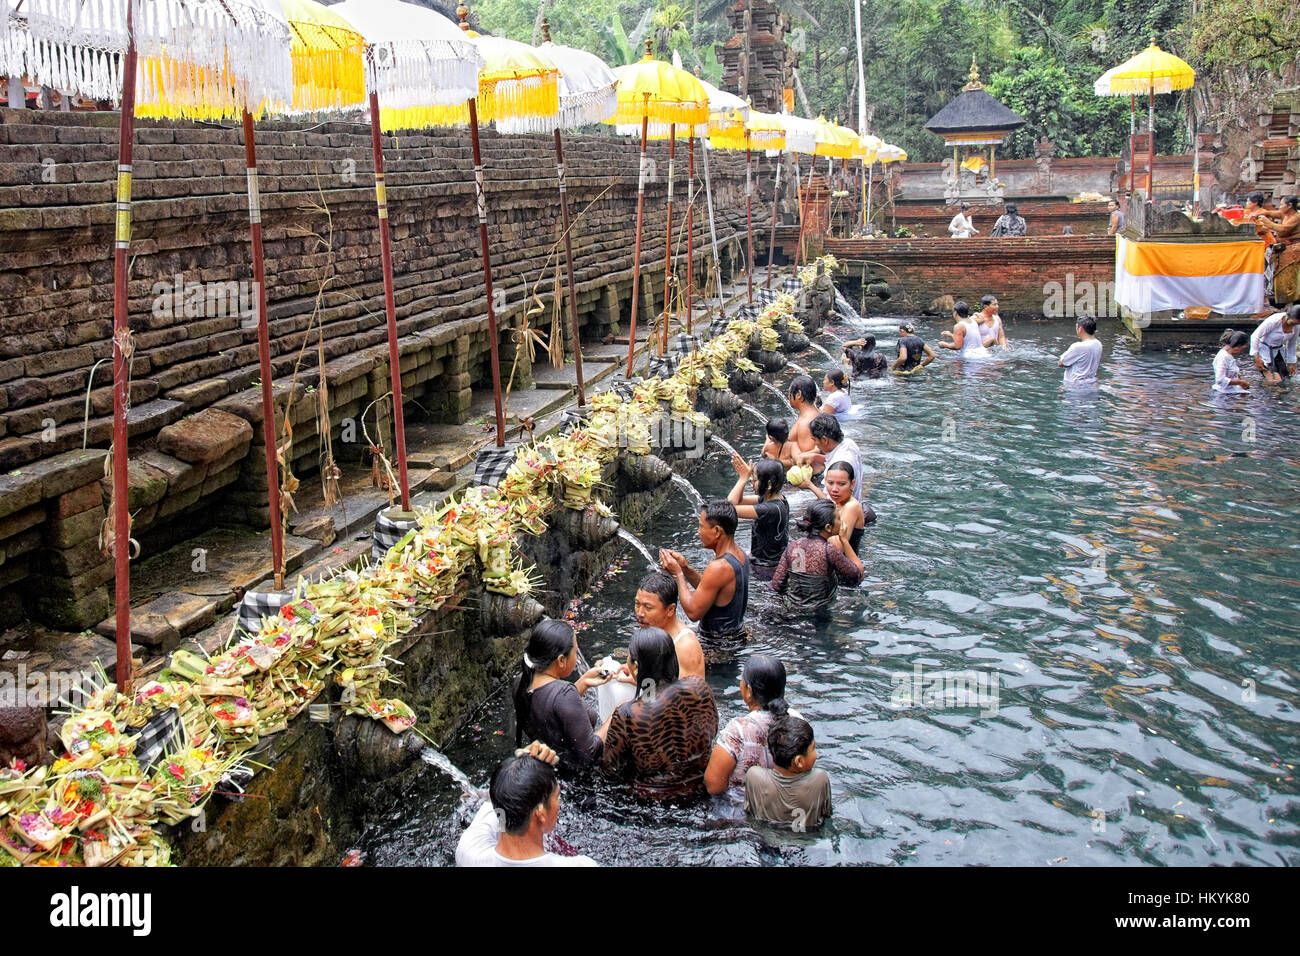 TAMPAK SIRING, Bali, Indonesia - 30 ottobre: persone in preghiera al santo acqua sorgiva tempio Puru Tirtha Empul durante la cerimonia di purificazione su 30 Ottobre Foto Stock